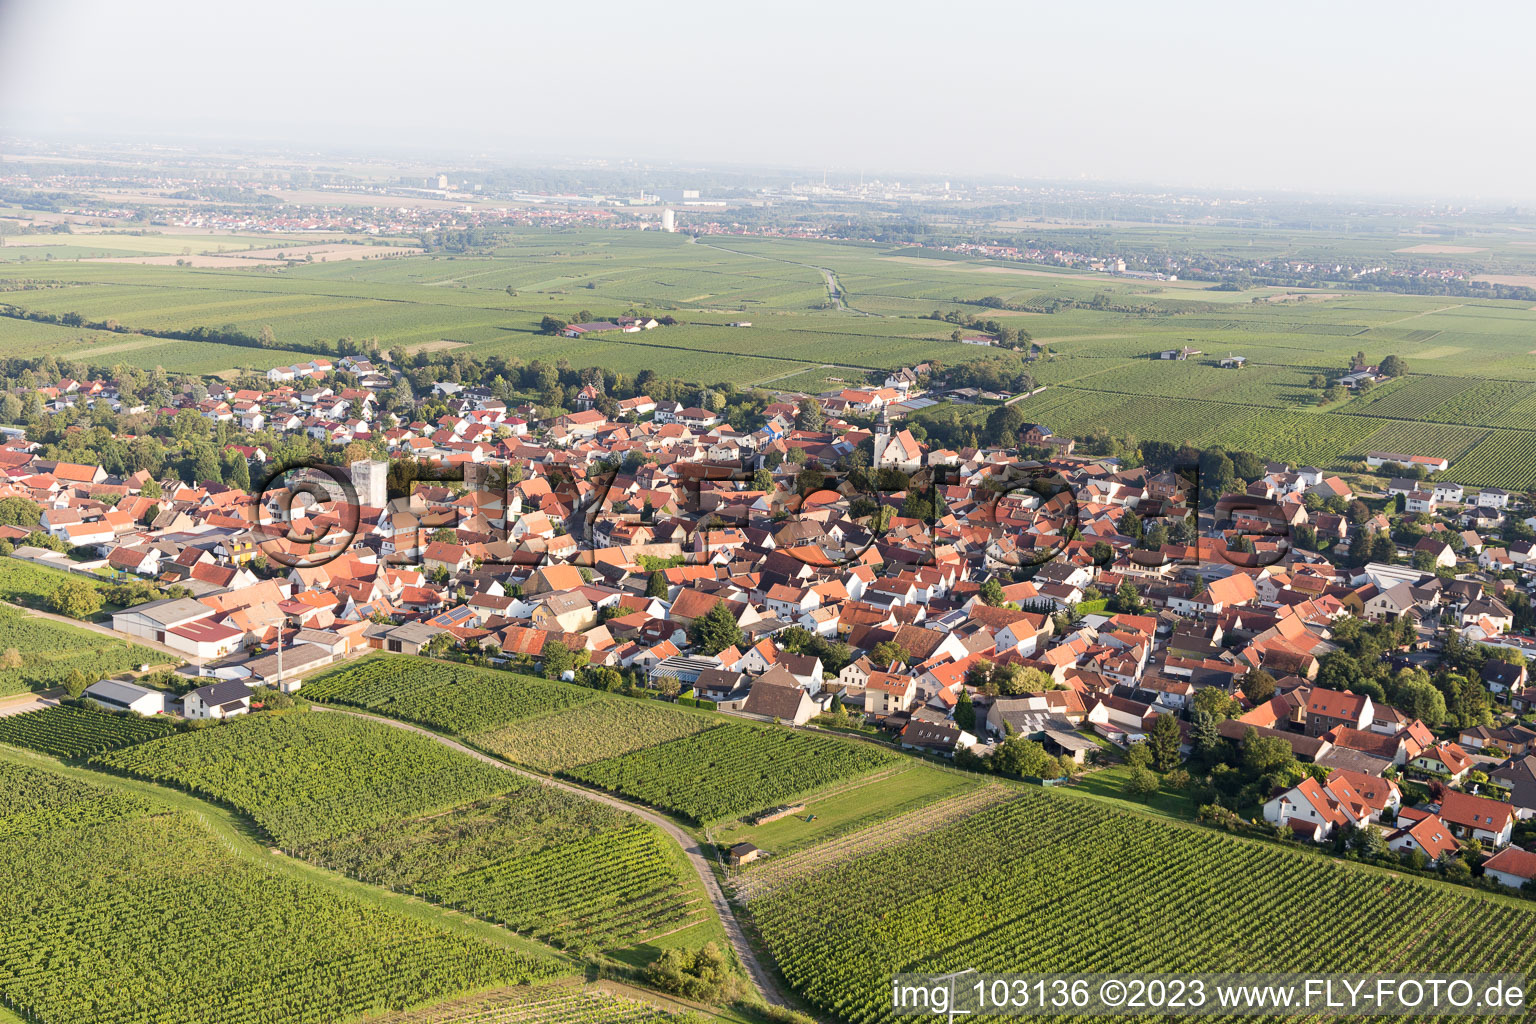 Bechtheim im Bundesland Rheinland-Pfalz, Deutschland von oben gesehen